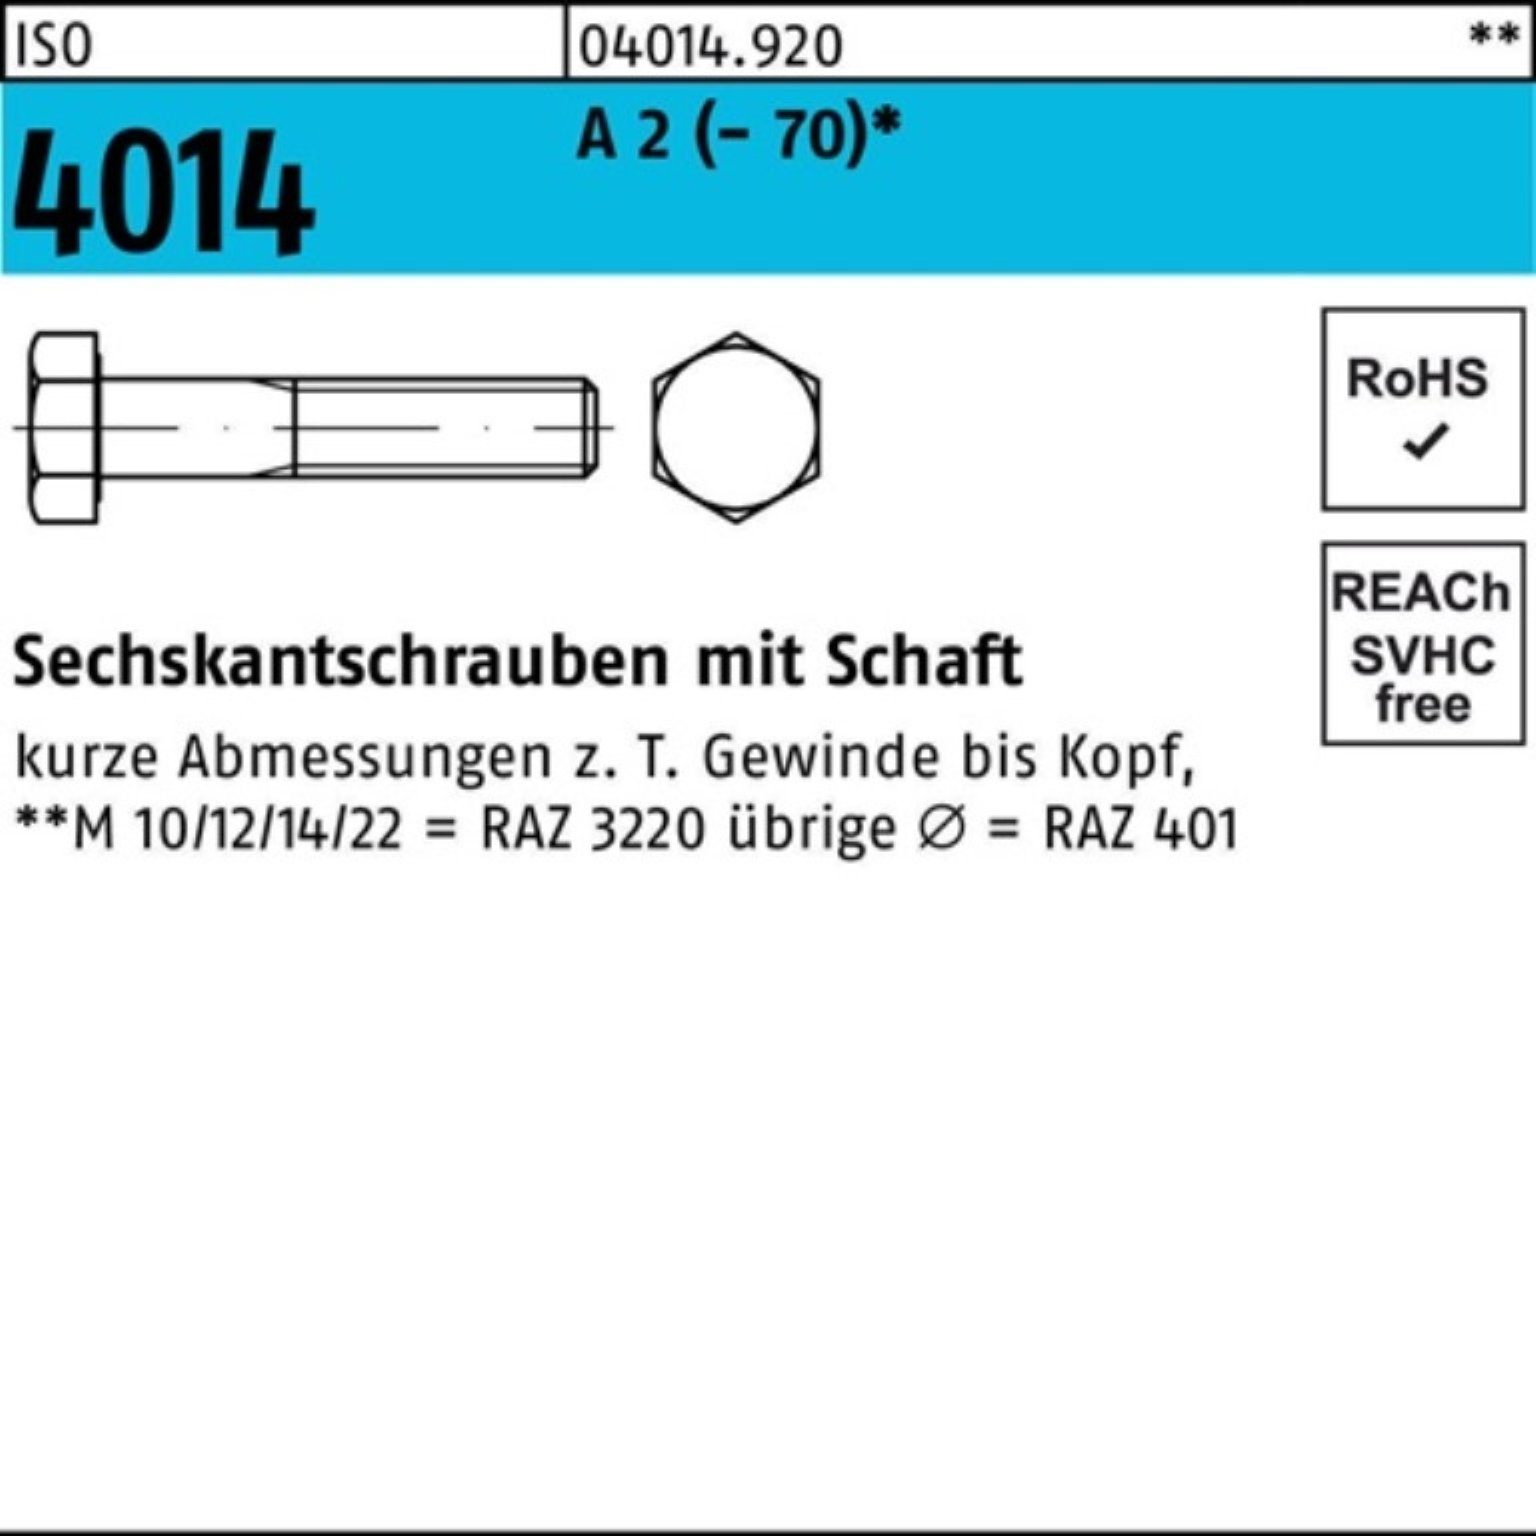 ISO Schaft M16x 100er Sechskantschraube Pack 4014 Bufab (70) 25 75 St Sechskantschraube A 2